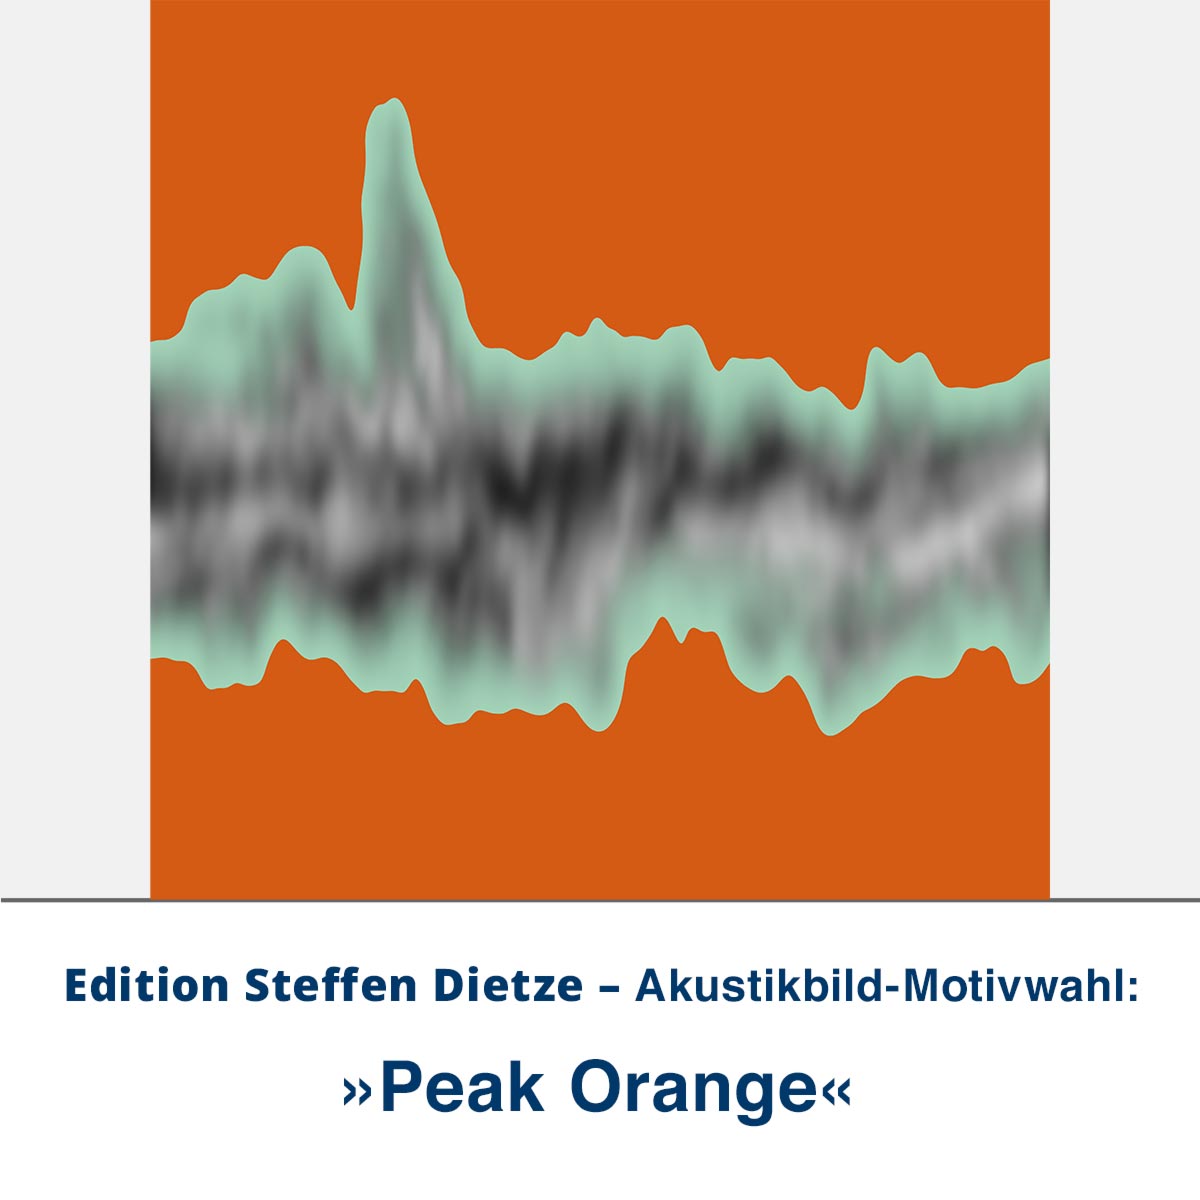 Akustikbild »Peak Orange«, Edition Steffen Dietze